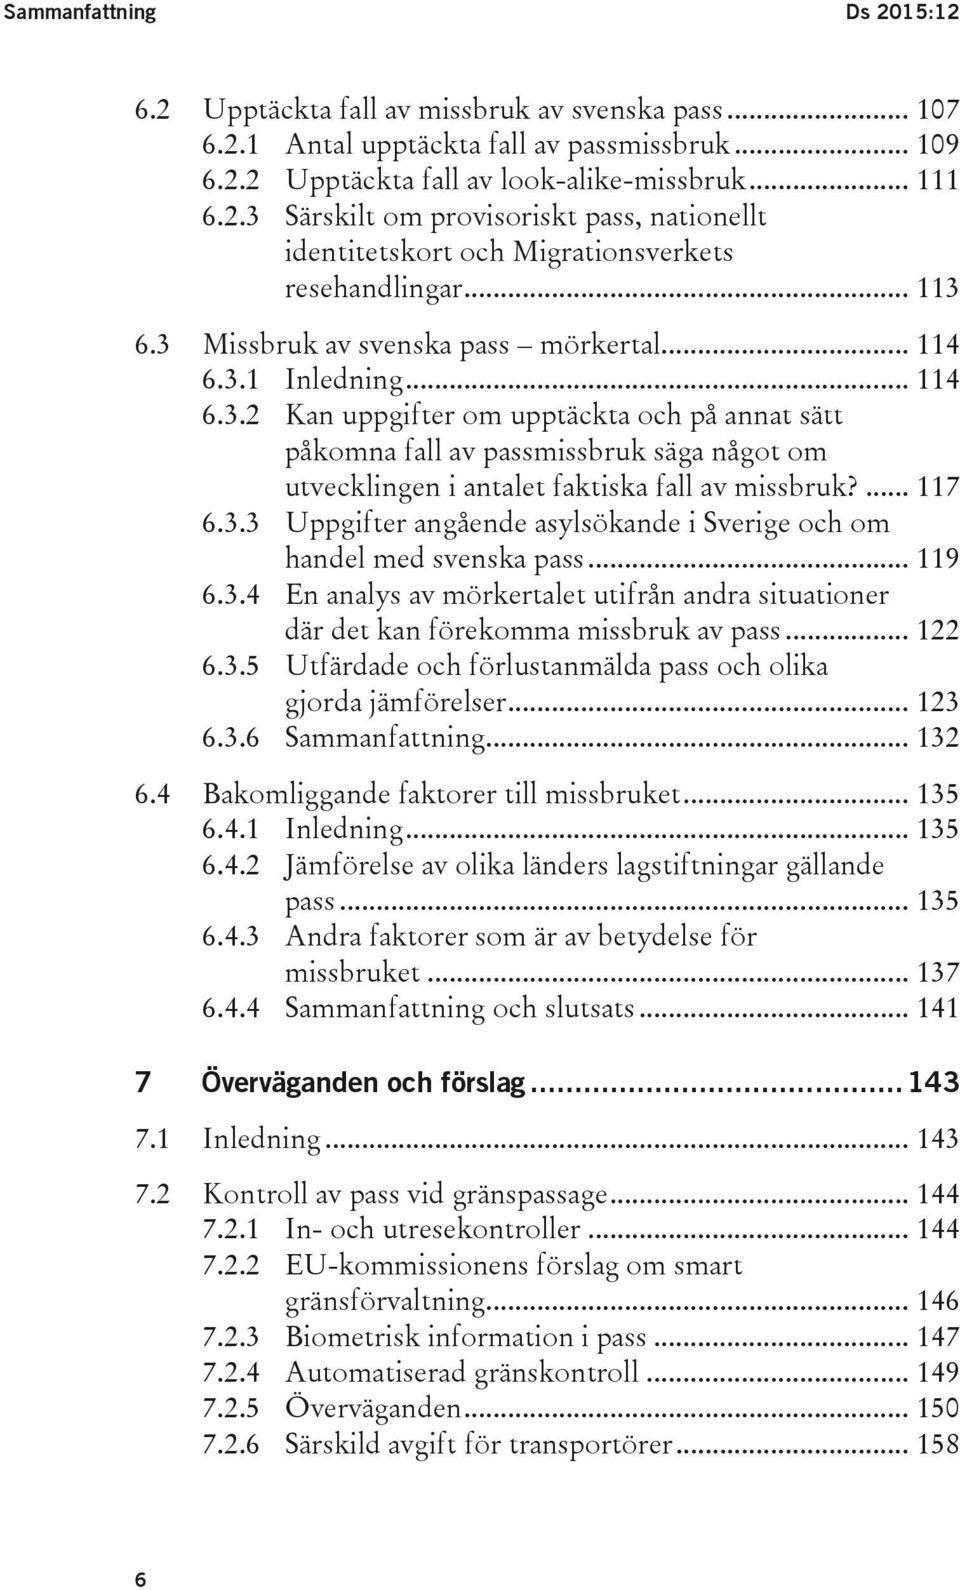 ... 117 6.3.3 Uppgifter angående asylsökande i Sverige och om handel med svenska pass... 119 6.3.4 En analys av mörkertalet utifrån andra situationer där det kan förekomma missbruk av pass... 122 6.3.5 Utfärdade och förlustanmälda pass och olika gjorda jämförelser.